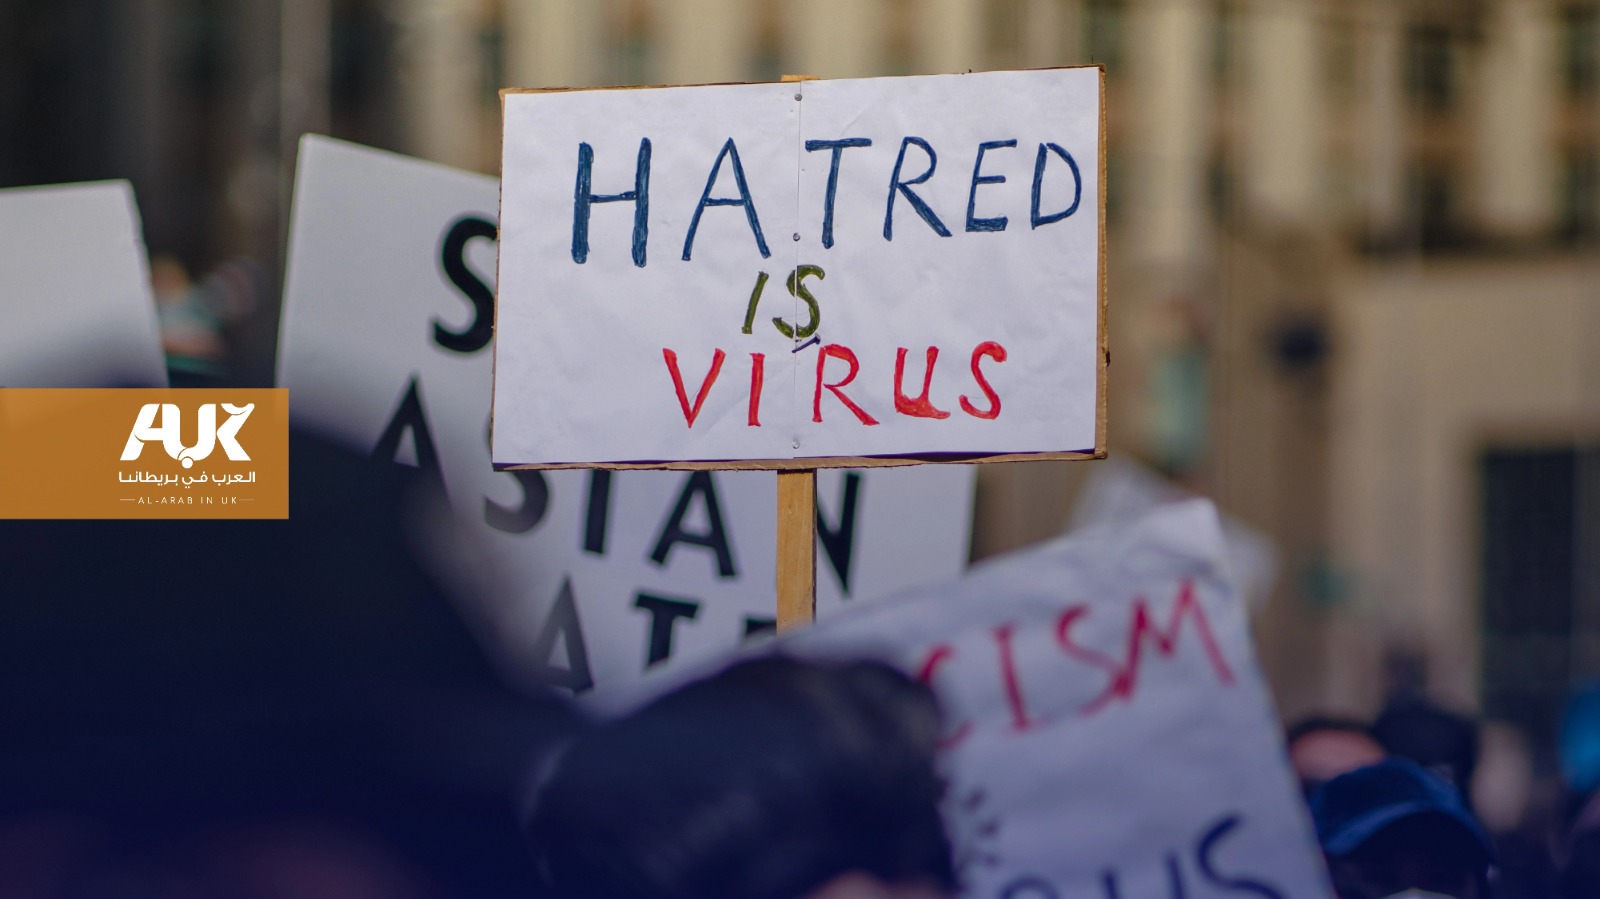 ارتفاع معدل جرائم الإسلاموفوبيا ومعاداة السامية في بريطانيا